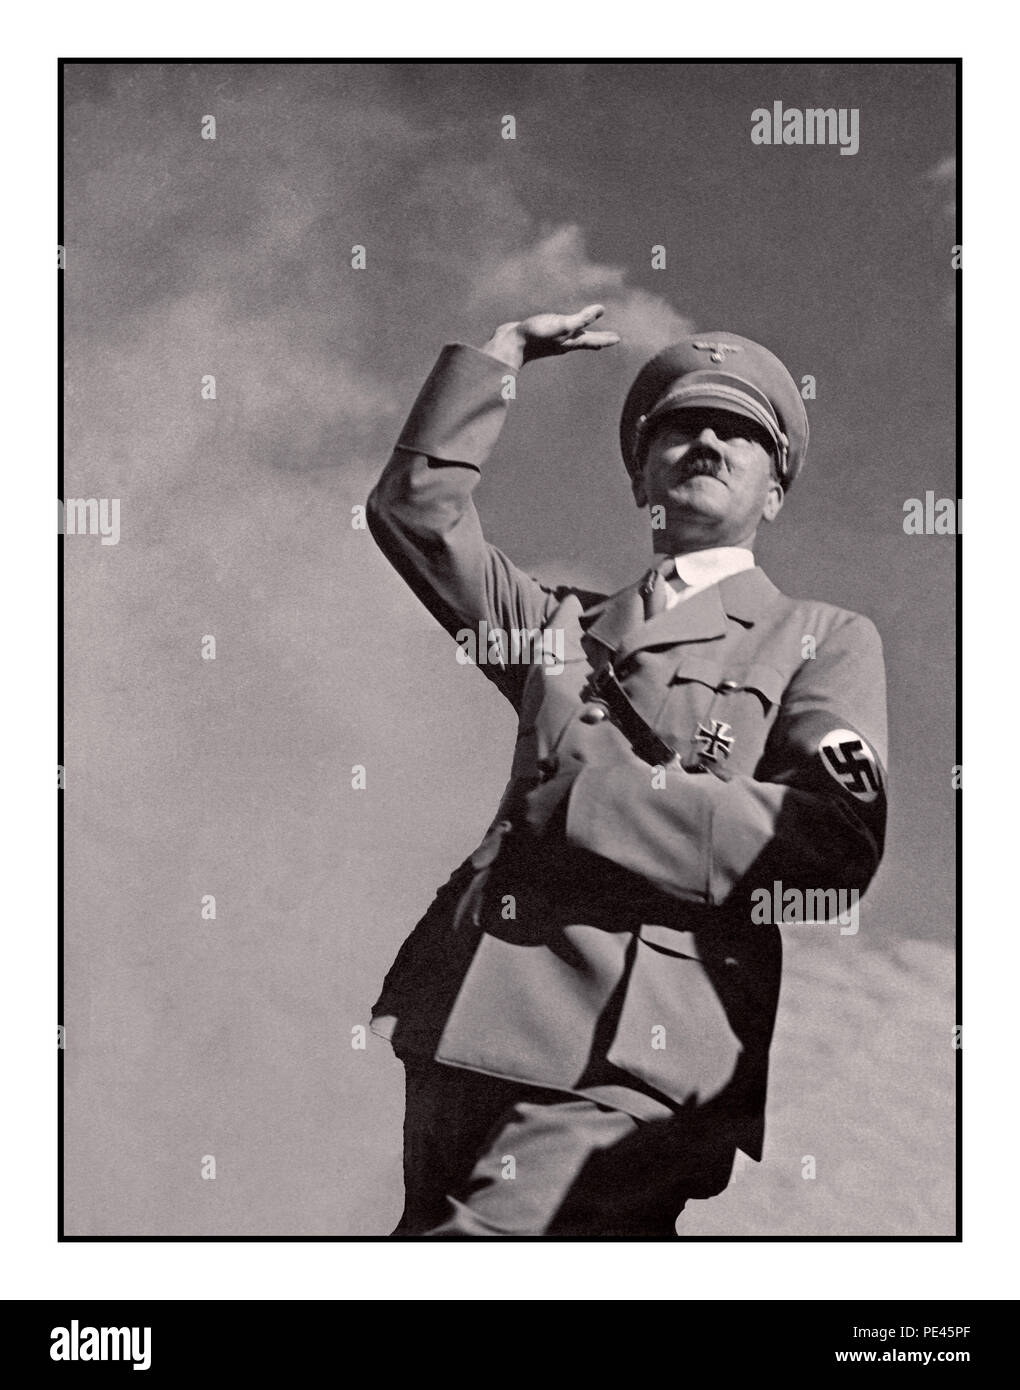 ADOLF HITLER SALUTATE 1939 WW2 propaganda tedesca immagine di Adolf Hitler in uniforme militare indossa un Nazi swastika armband salutando 'Heil Hitler' ad una folla a basso angolo di visione con sfondo cielo Foto Stock